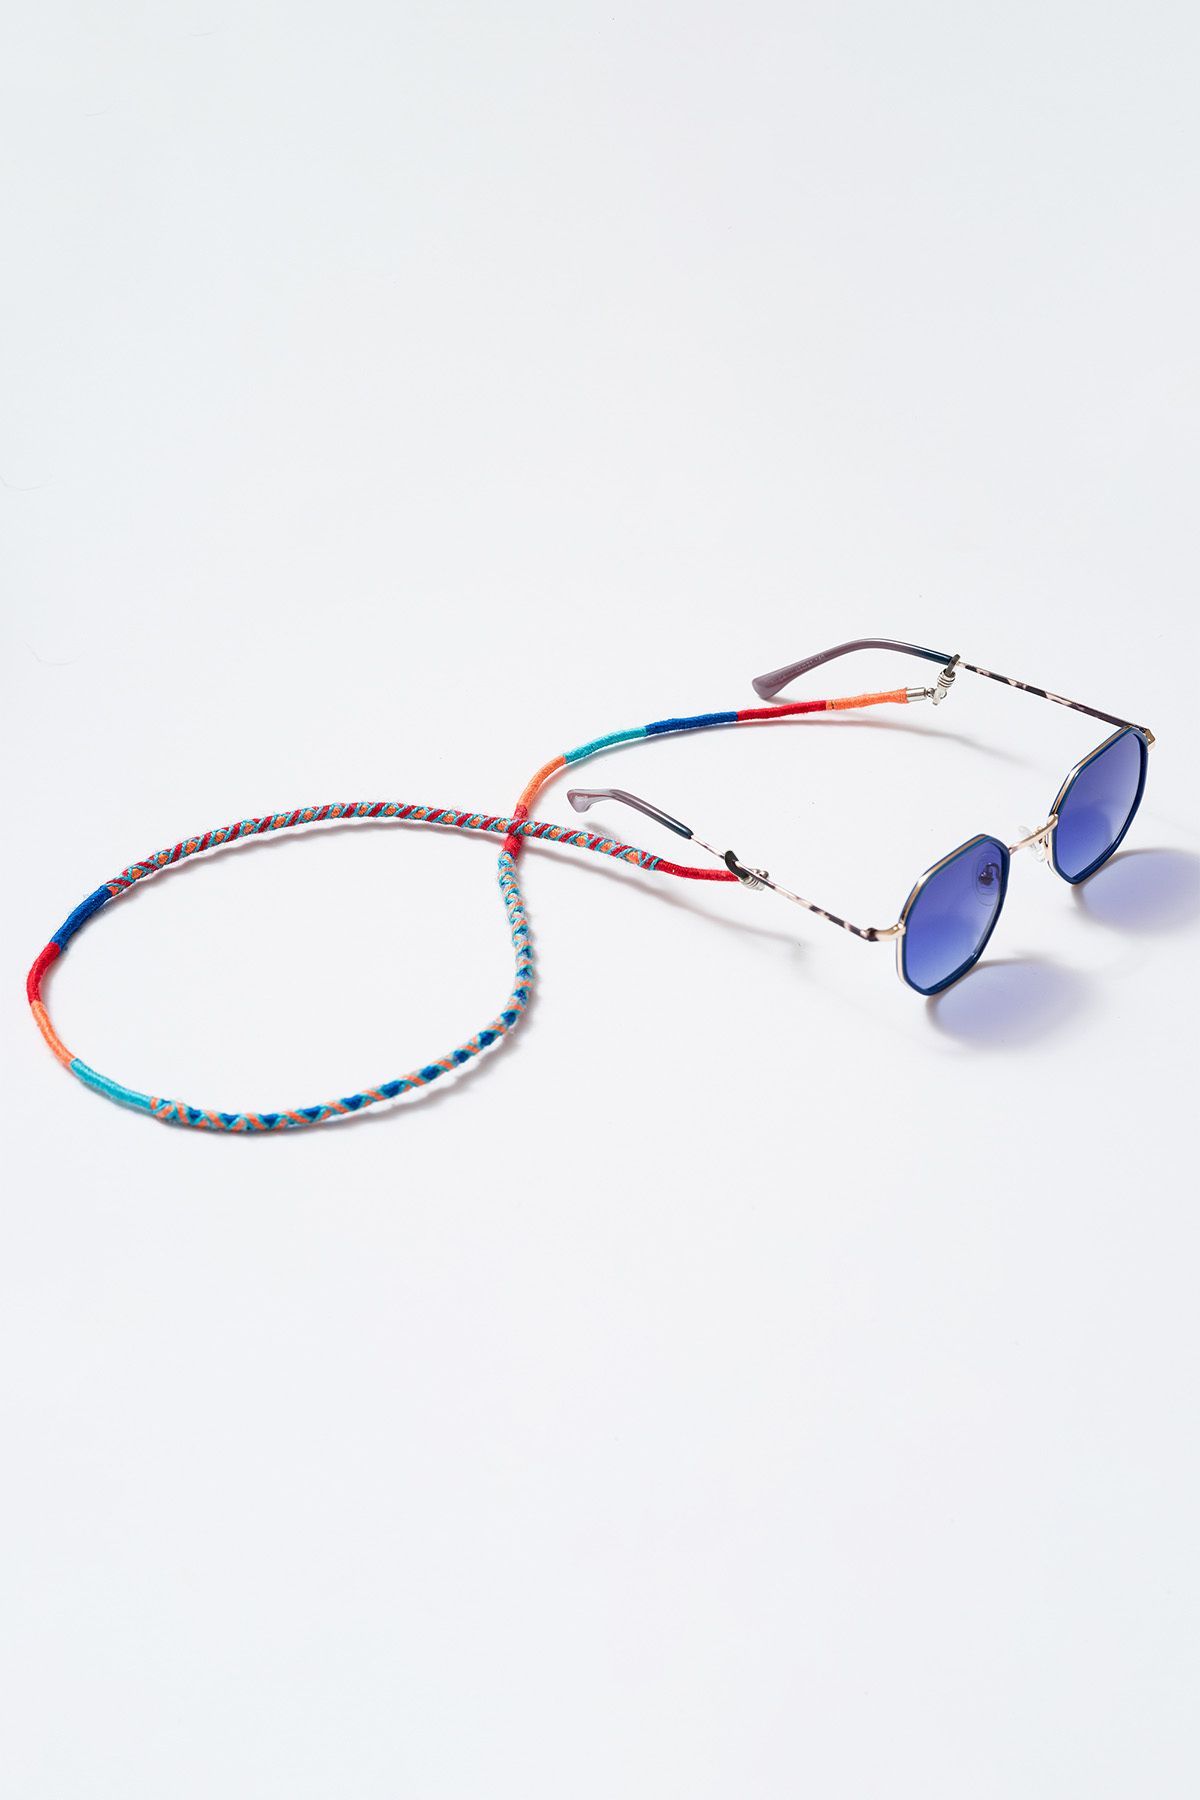 Hippi Pomegranate Renkli 70 Cm El Emeği Örgülü Özel Tasarım Yapılı Unisex Gözlük Ipi Aksesuarı